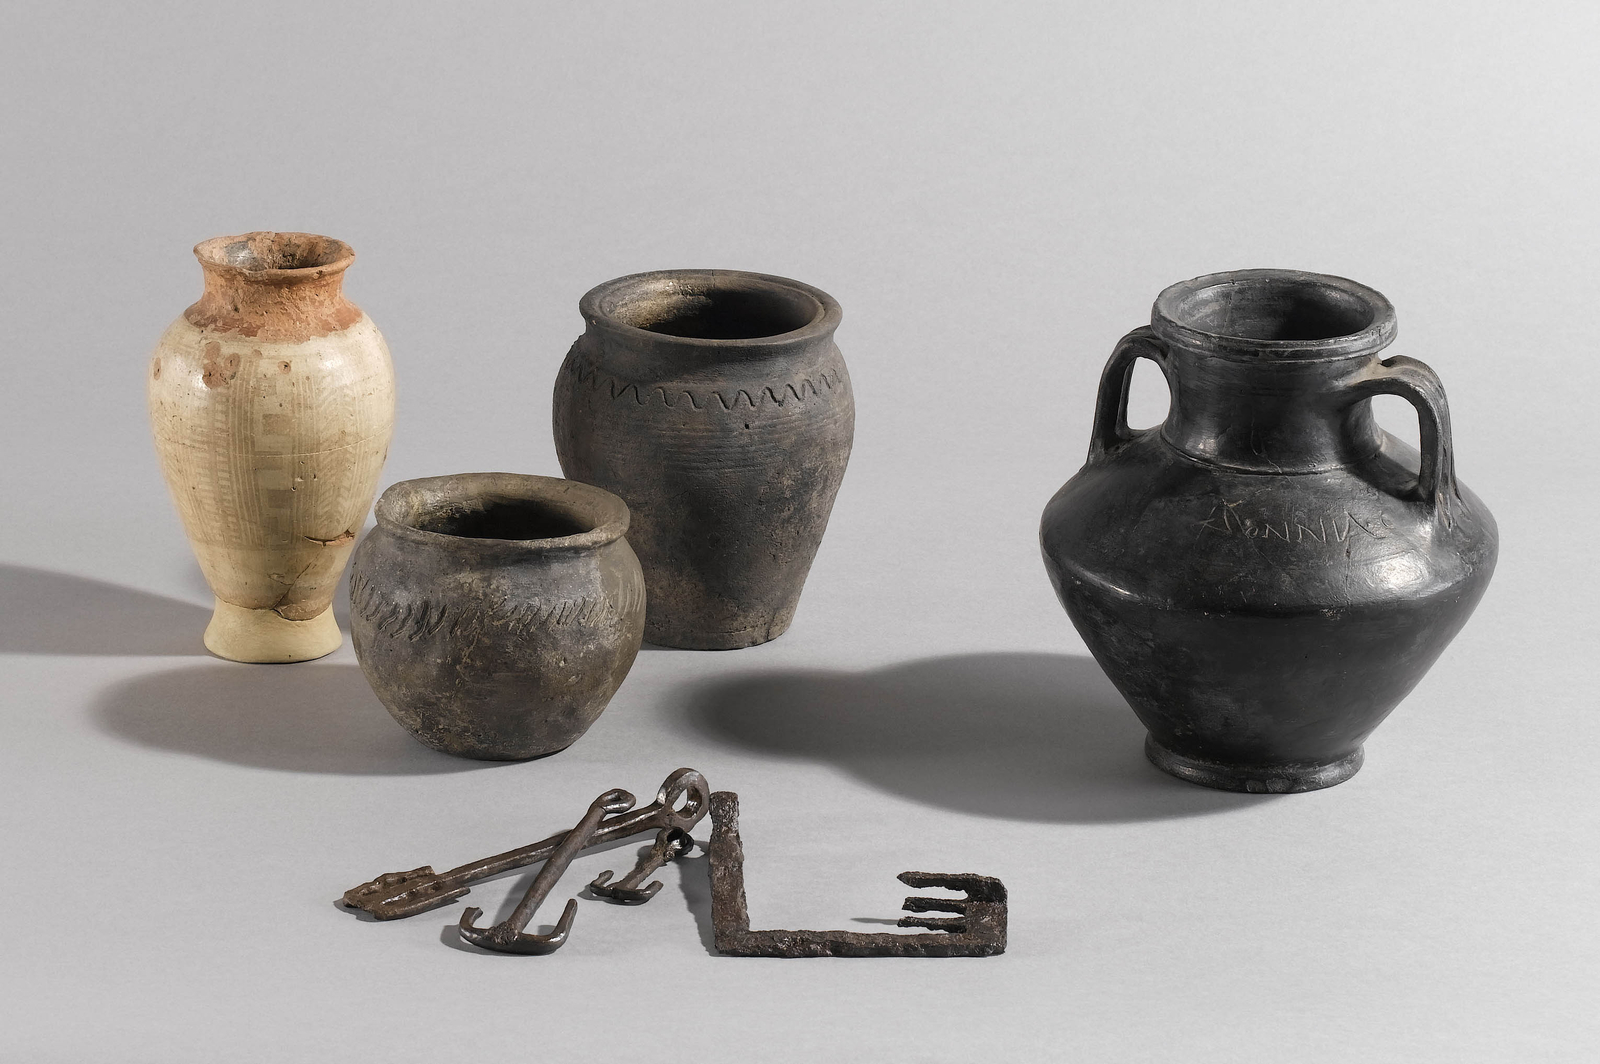 Photographie de vases et d'objets en métal découverts sur le Mont-Beuvray